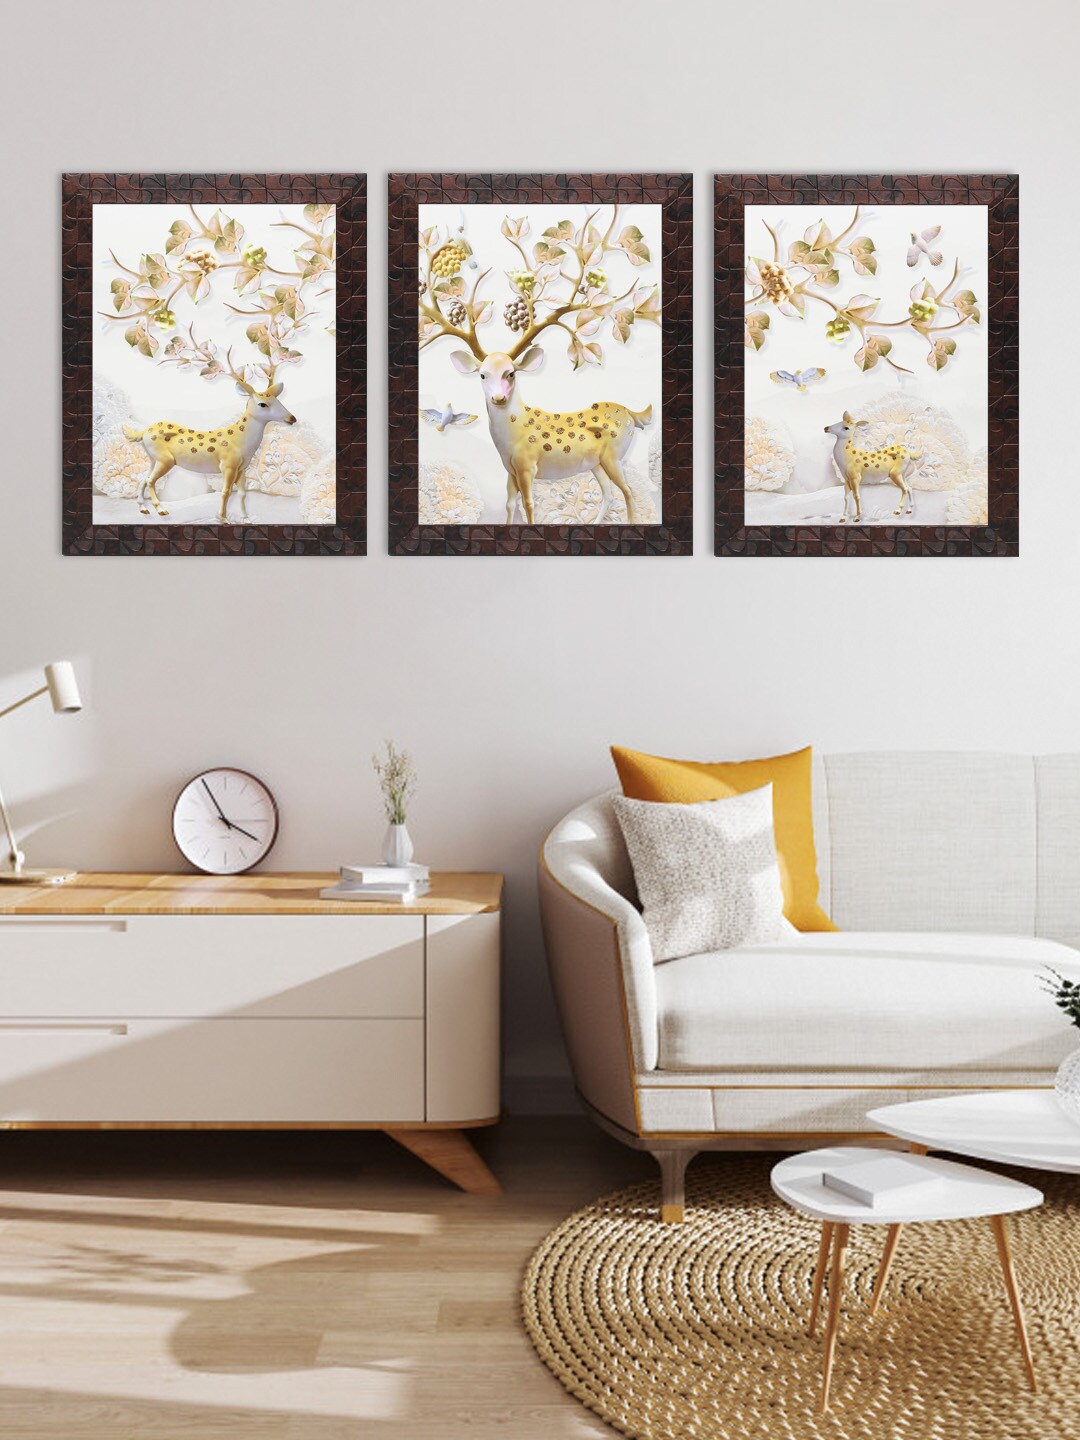 

Indianara Set of 3 Deer Framed Art Prints, White